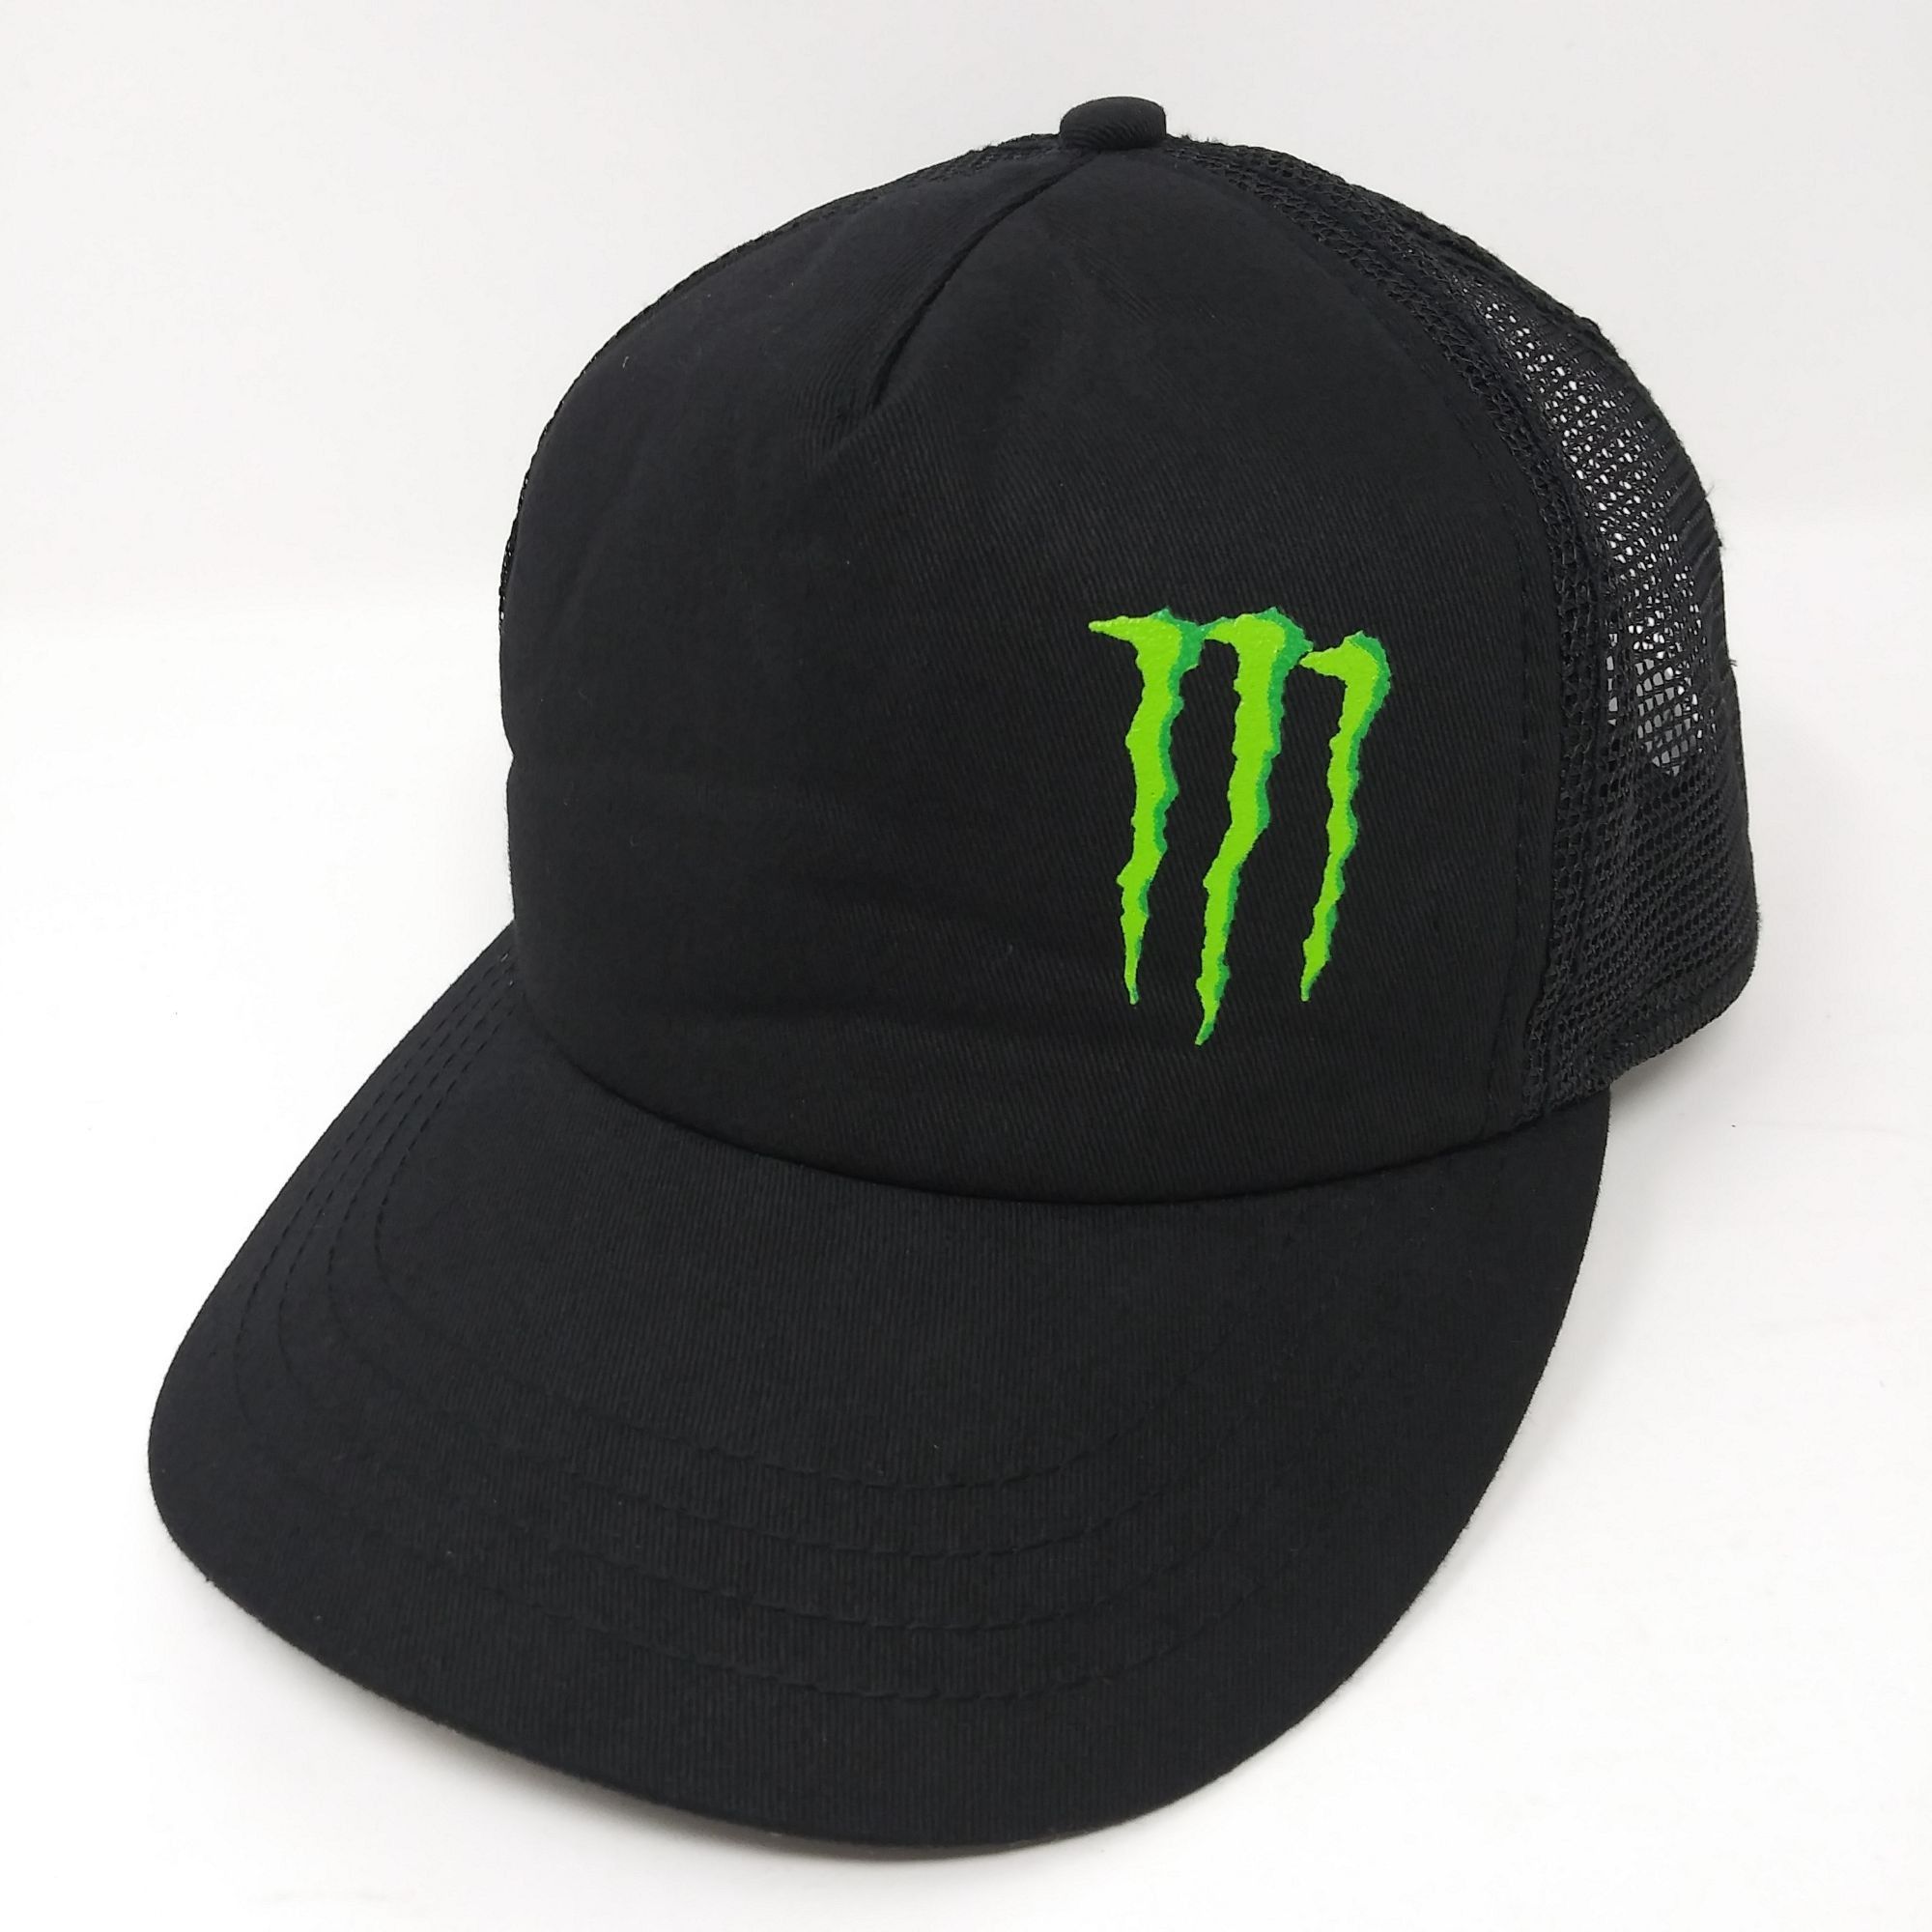 Snap Back Monster Energy Drink adjustable mesh snapback hat | Grailed